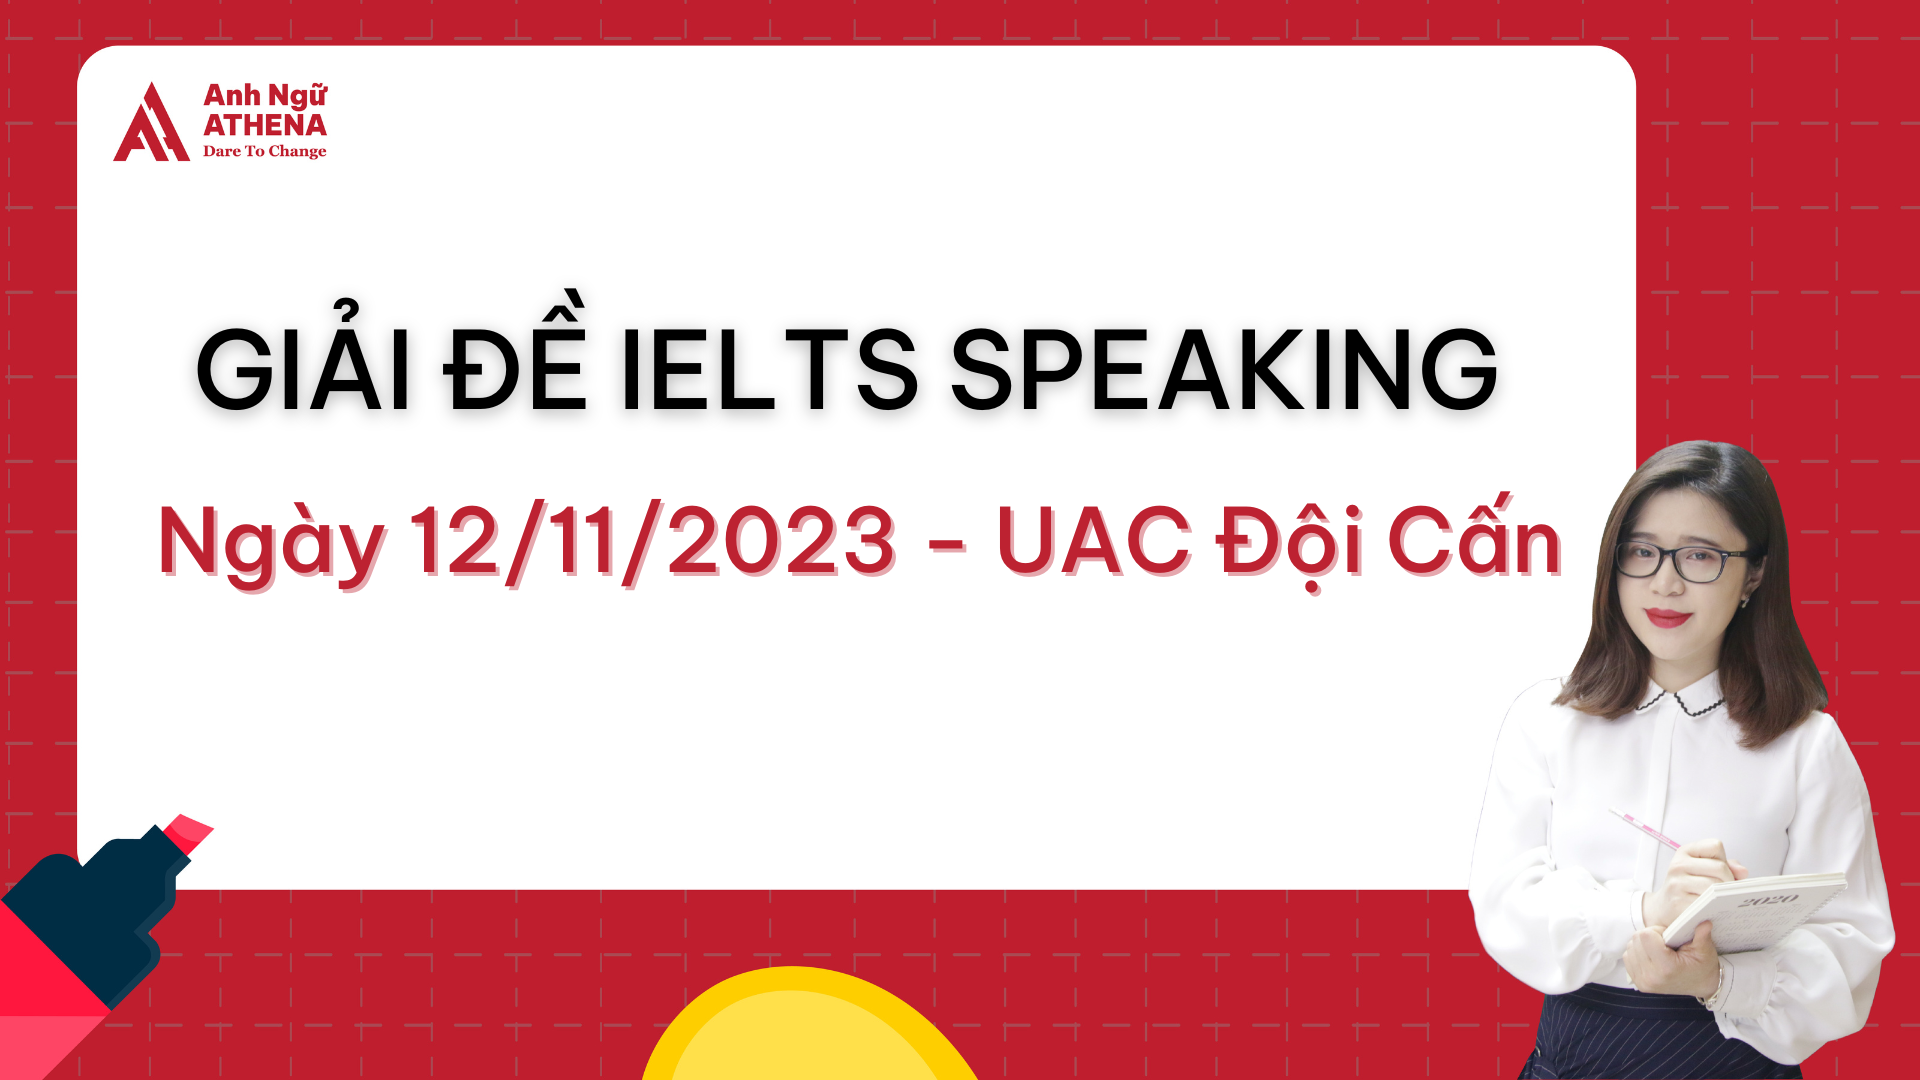 Giải đề IELTS Speaking ngày 12/11/2023 - UAC Đội Cấn